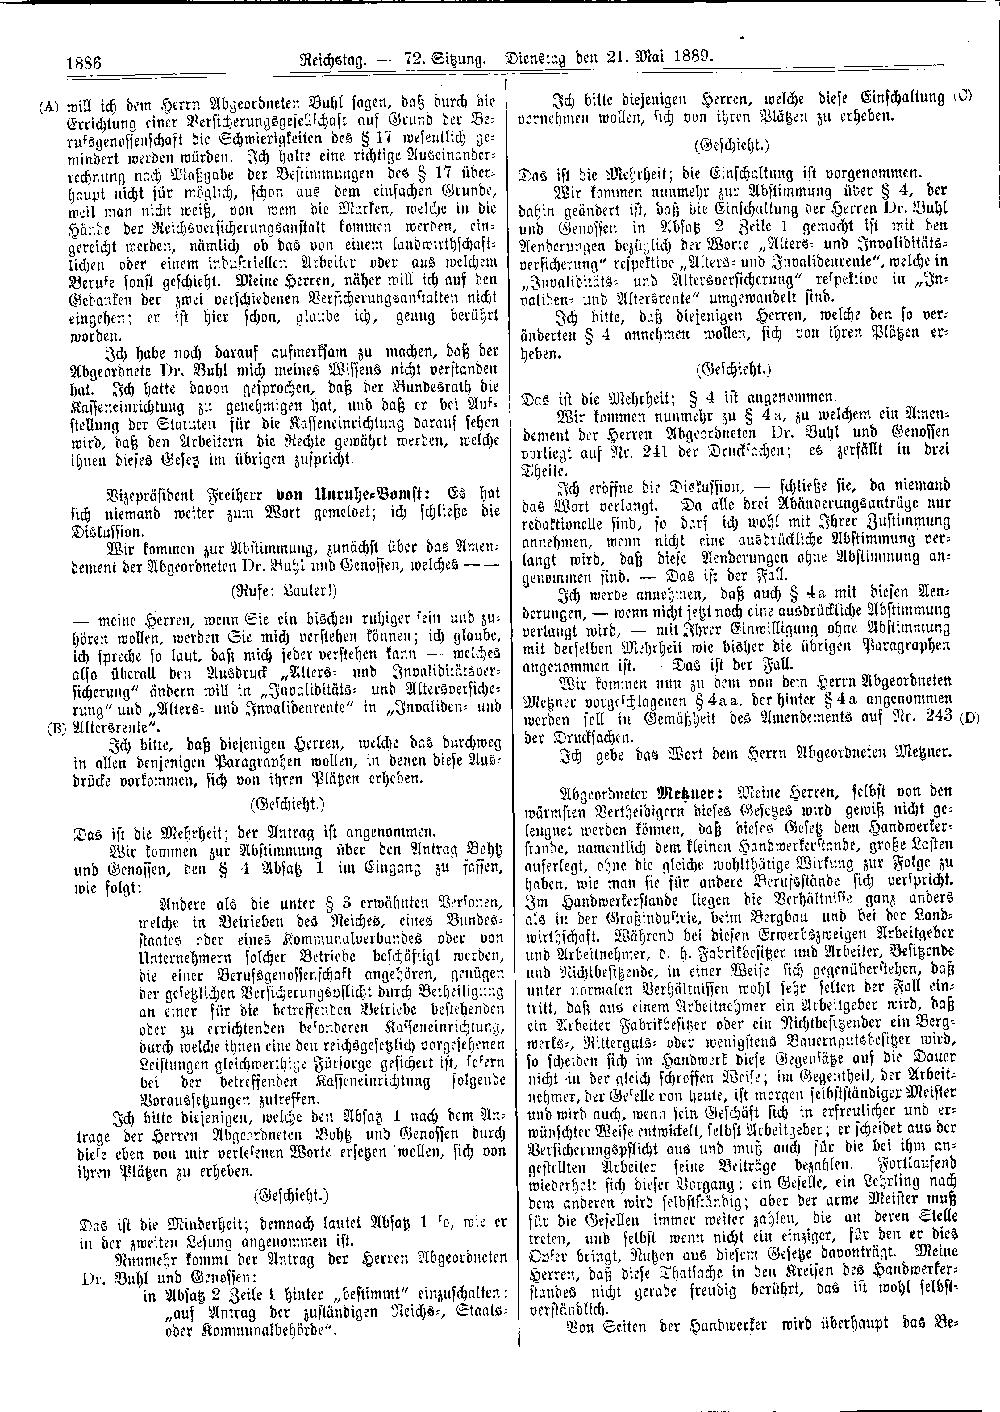 Scan der Seite 1886